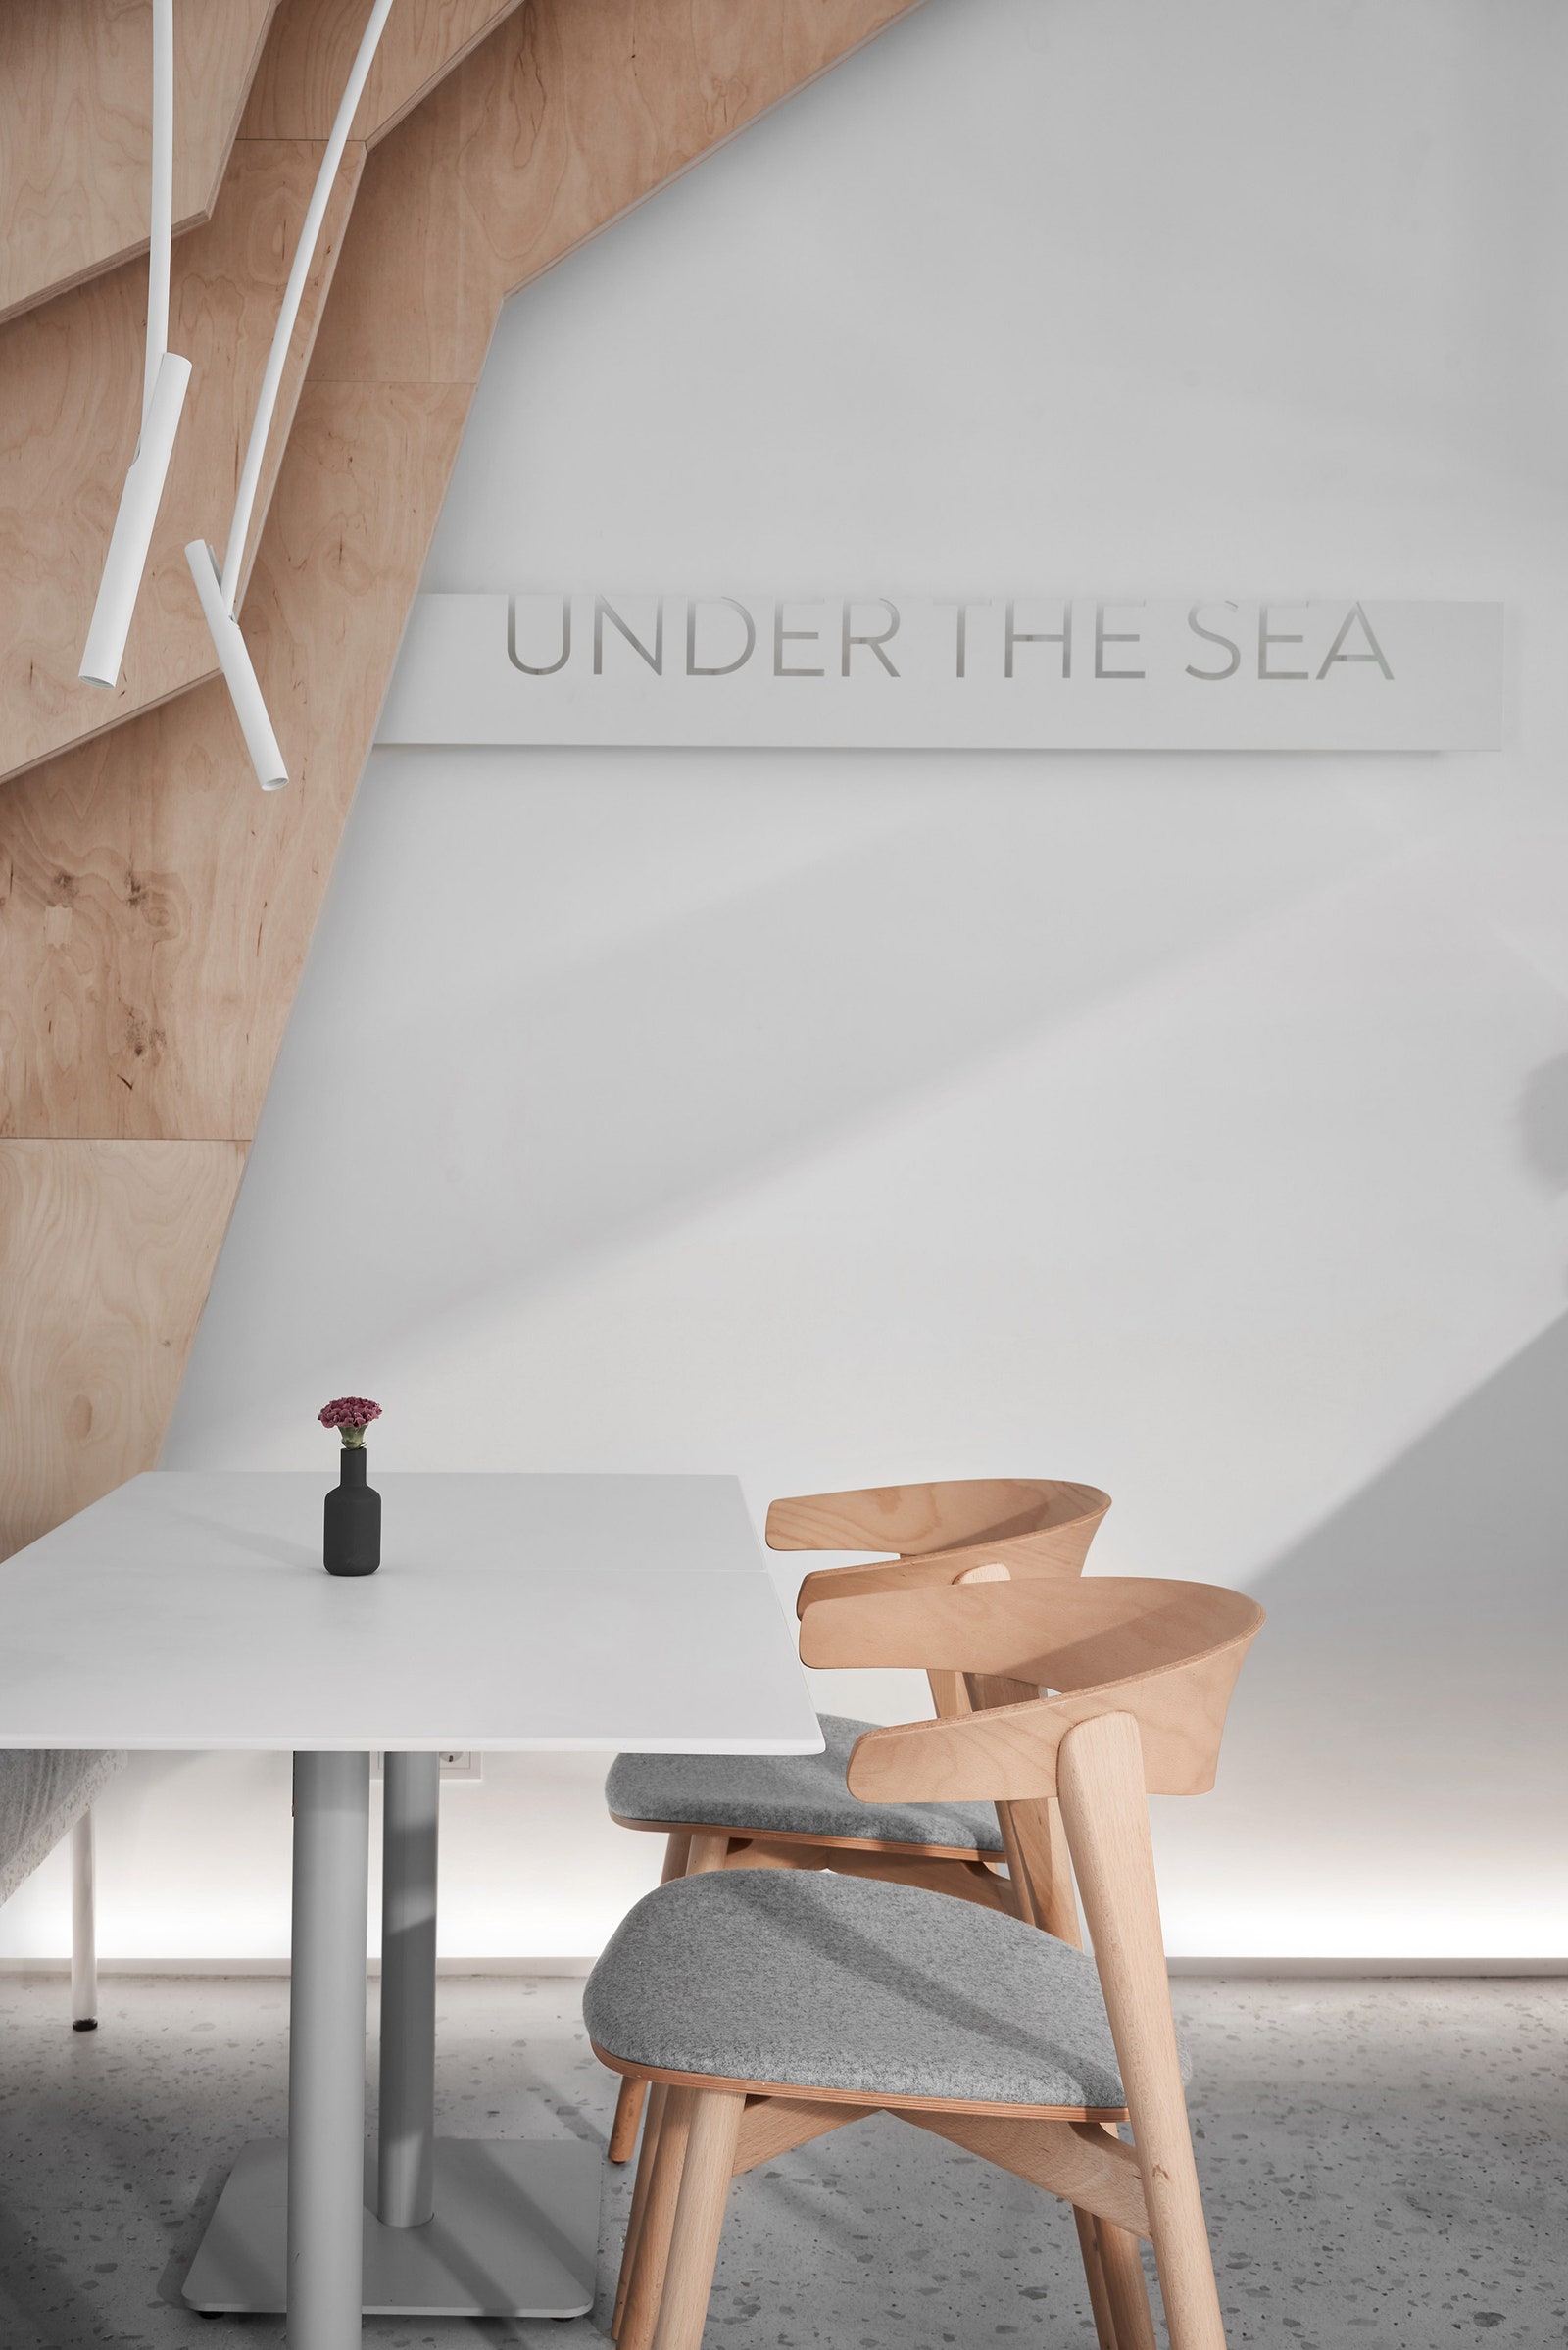 Победитель AD Design Award 2020 сушибар Under the Sea в СанктПетербурге